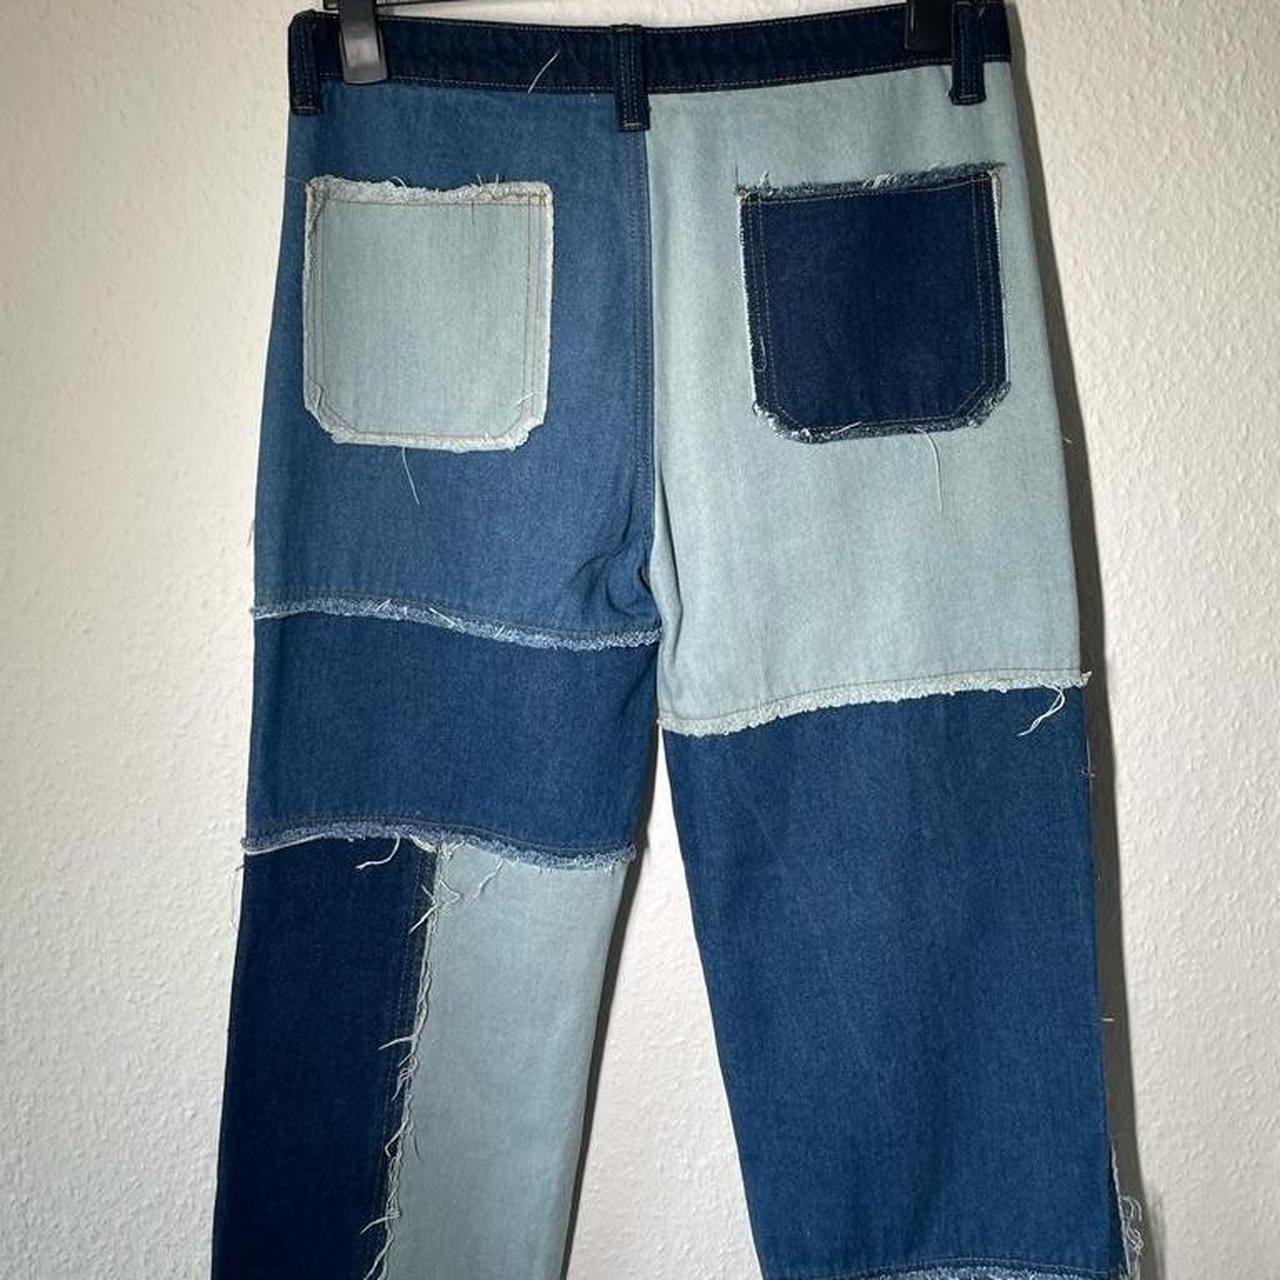 jaded london patch jeans 10/10... - Depop